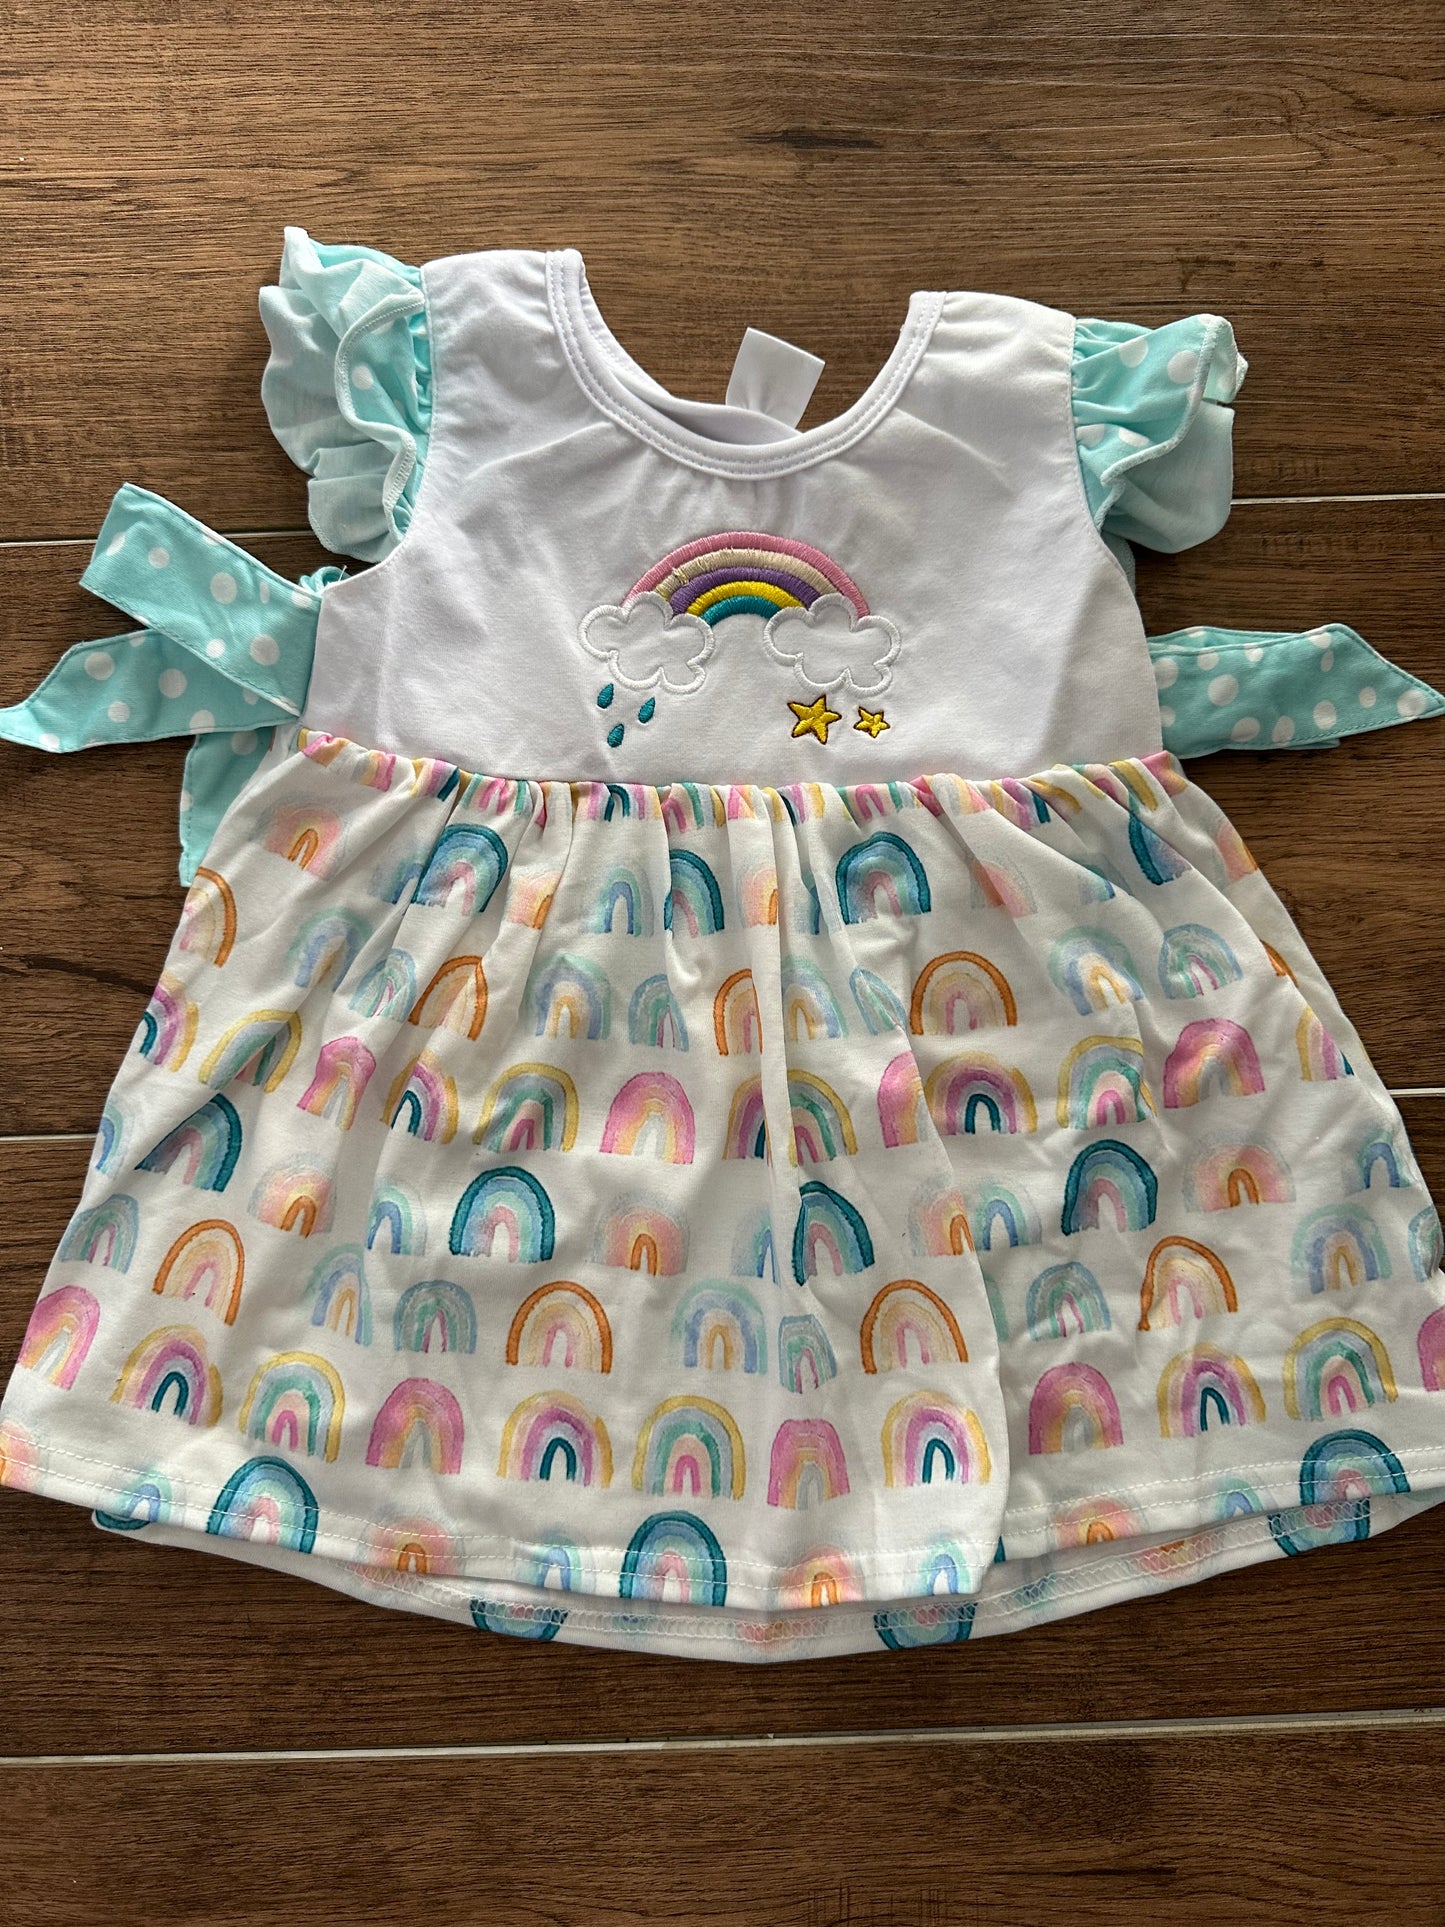 Rainy Day Rainbow Dress - Ready to ship